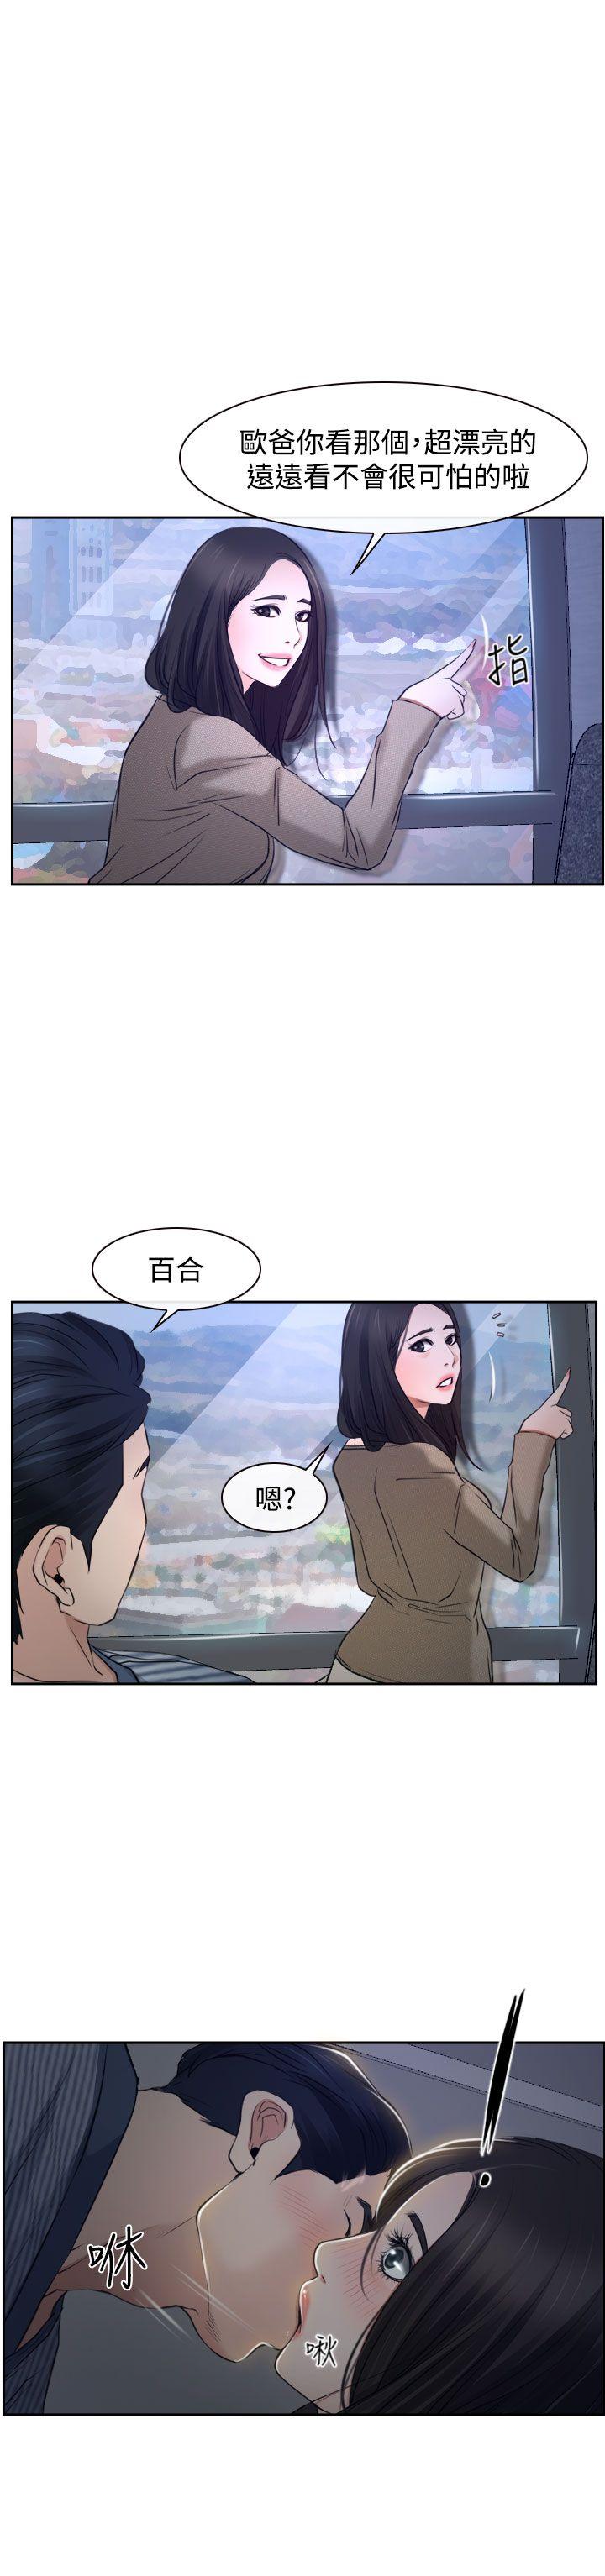 韩国污漫画 猜不透的心 第28话 29